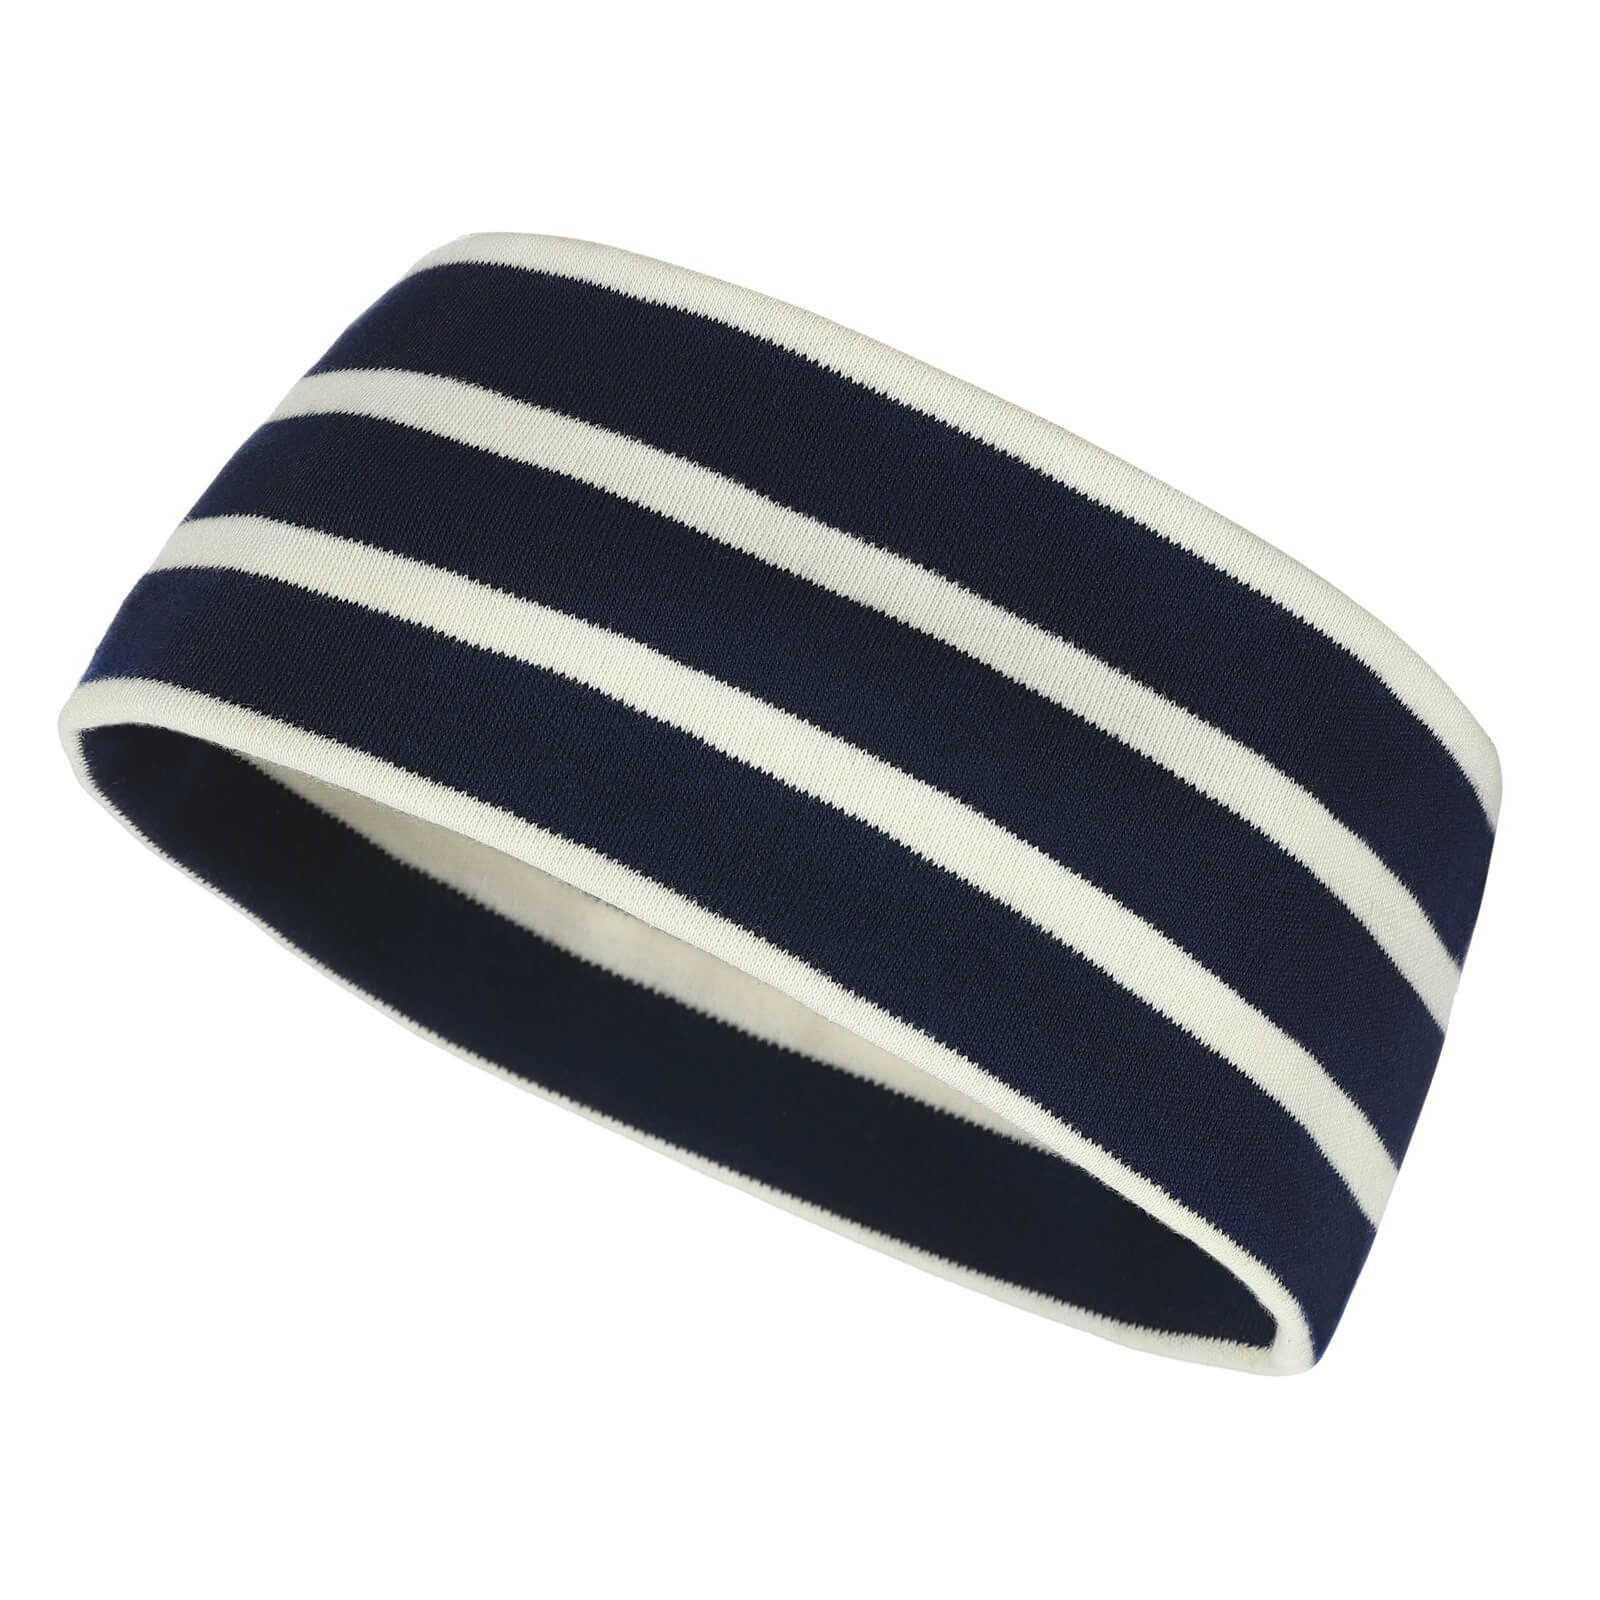 modAS Stirnband Unisex Kopfband Maritim für Kinder und Erwachsene zweilagig Baumwolle (25) blau / natur | Stirnbänder